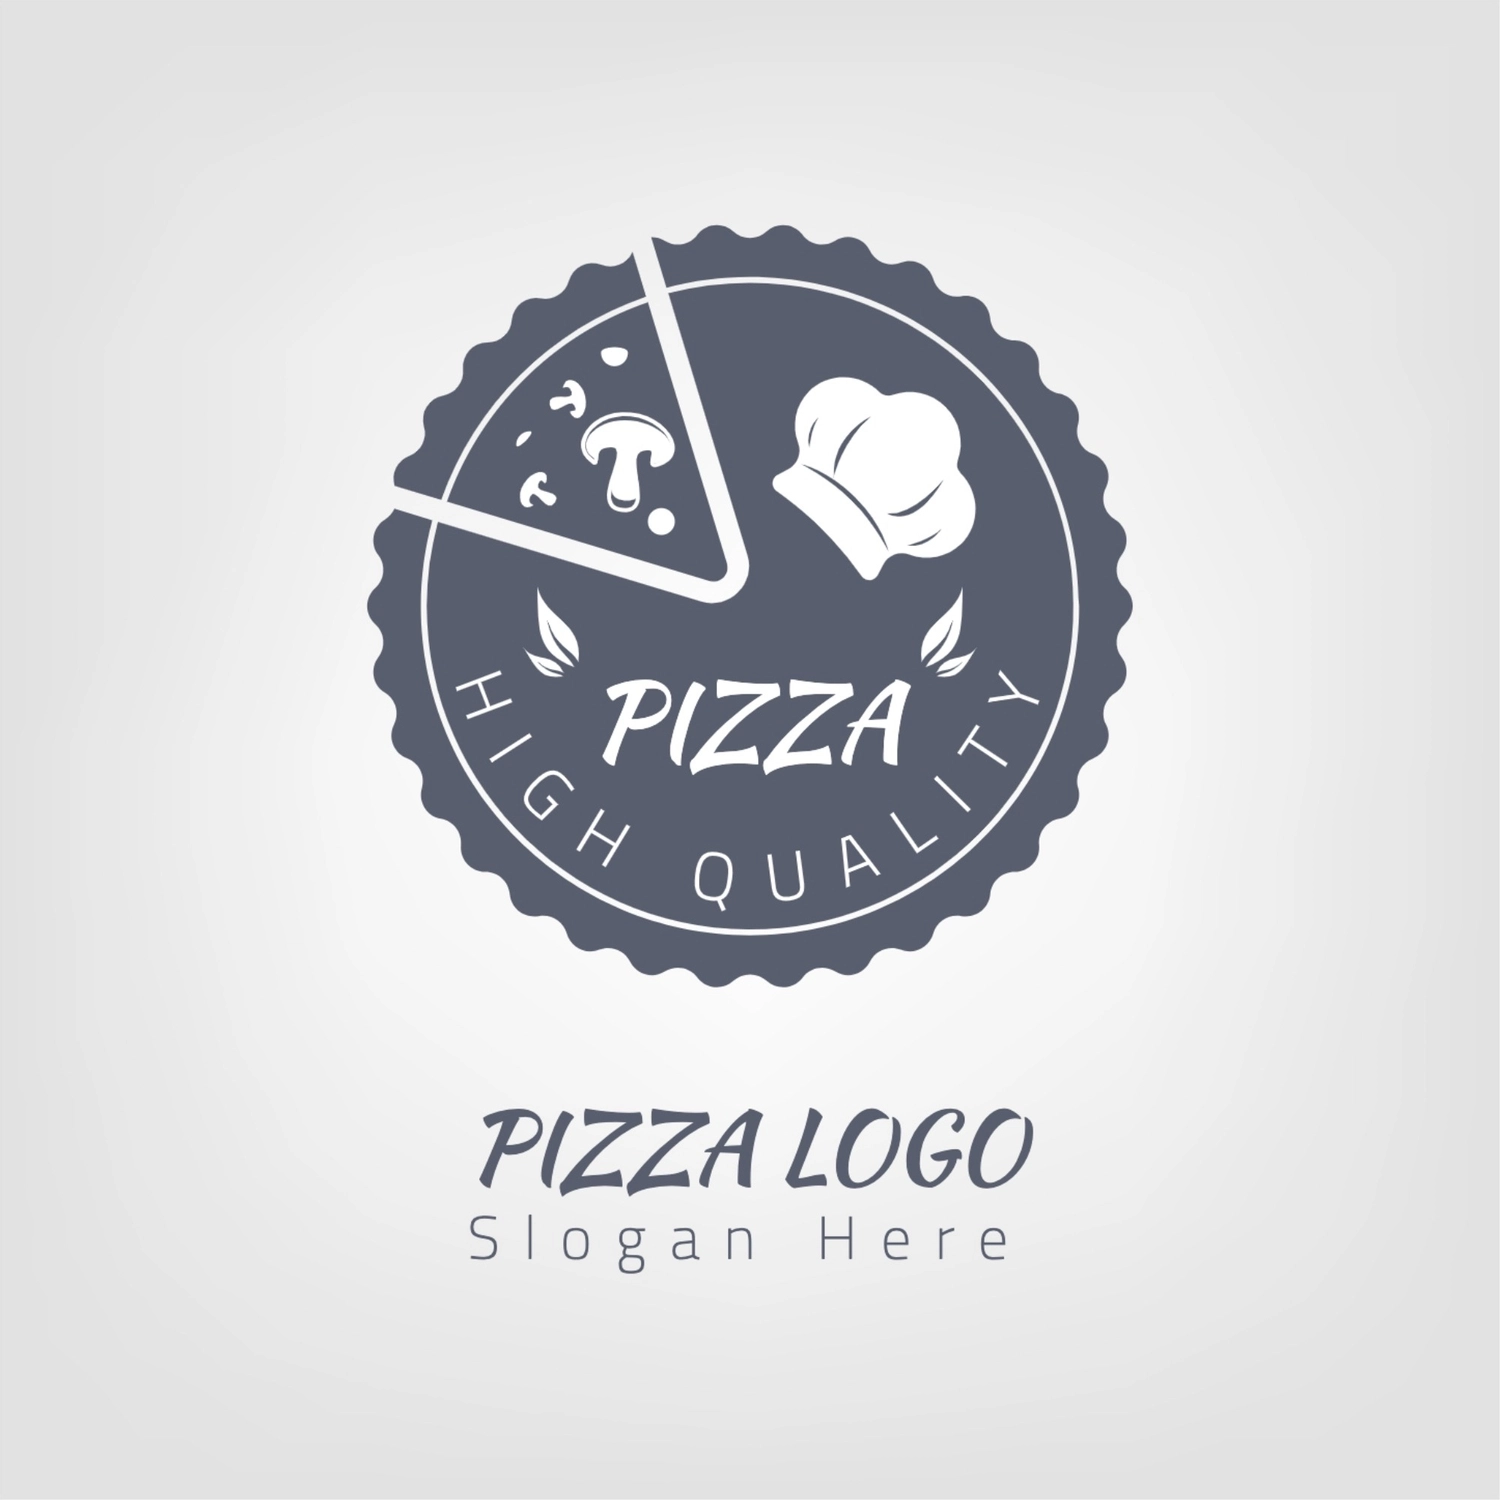 ピザ屋さんのロゴ, ロゴ, ロゴマーク, ロゴタイプ, ロゴテンプレート